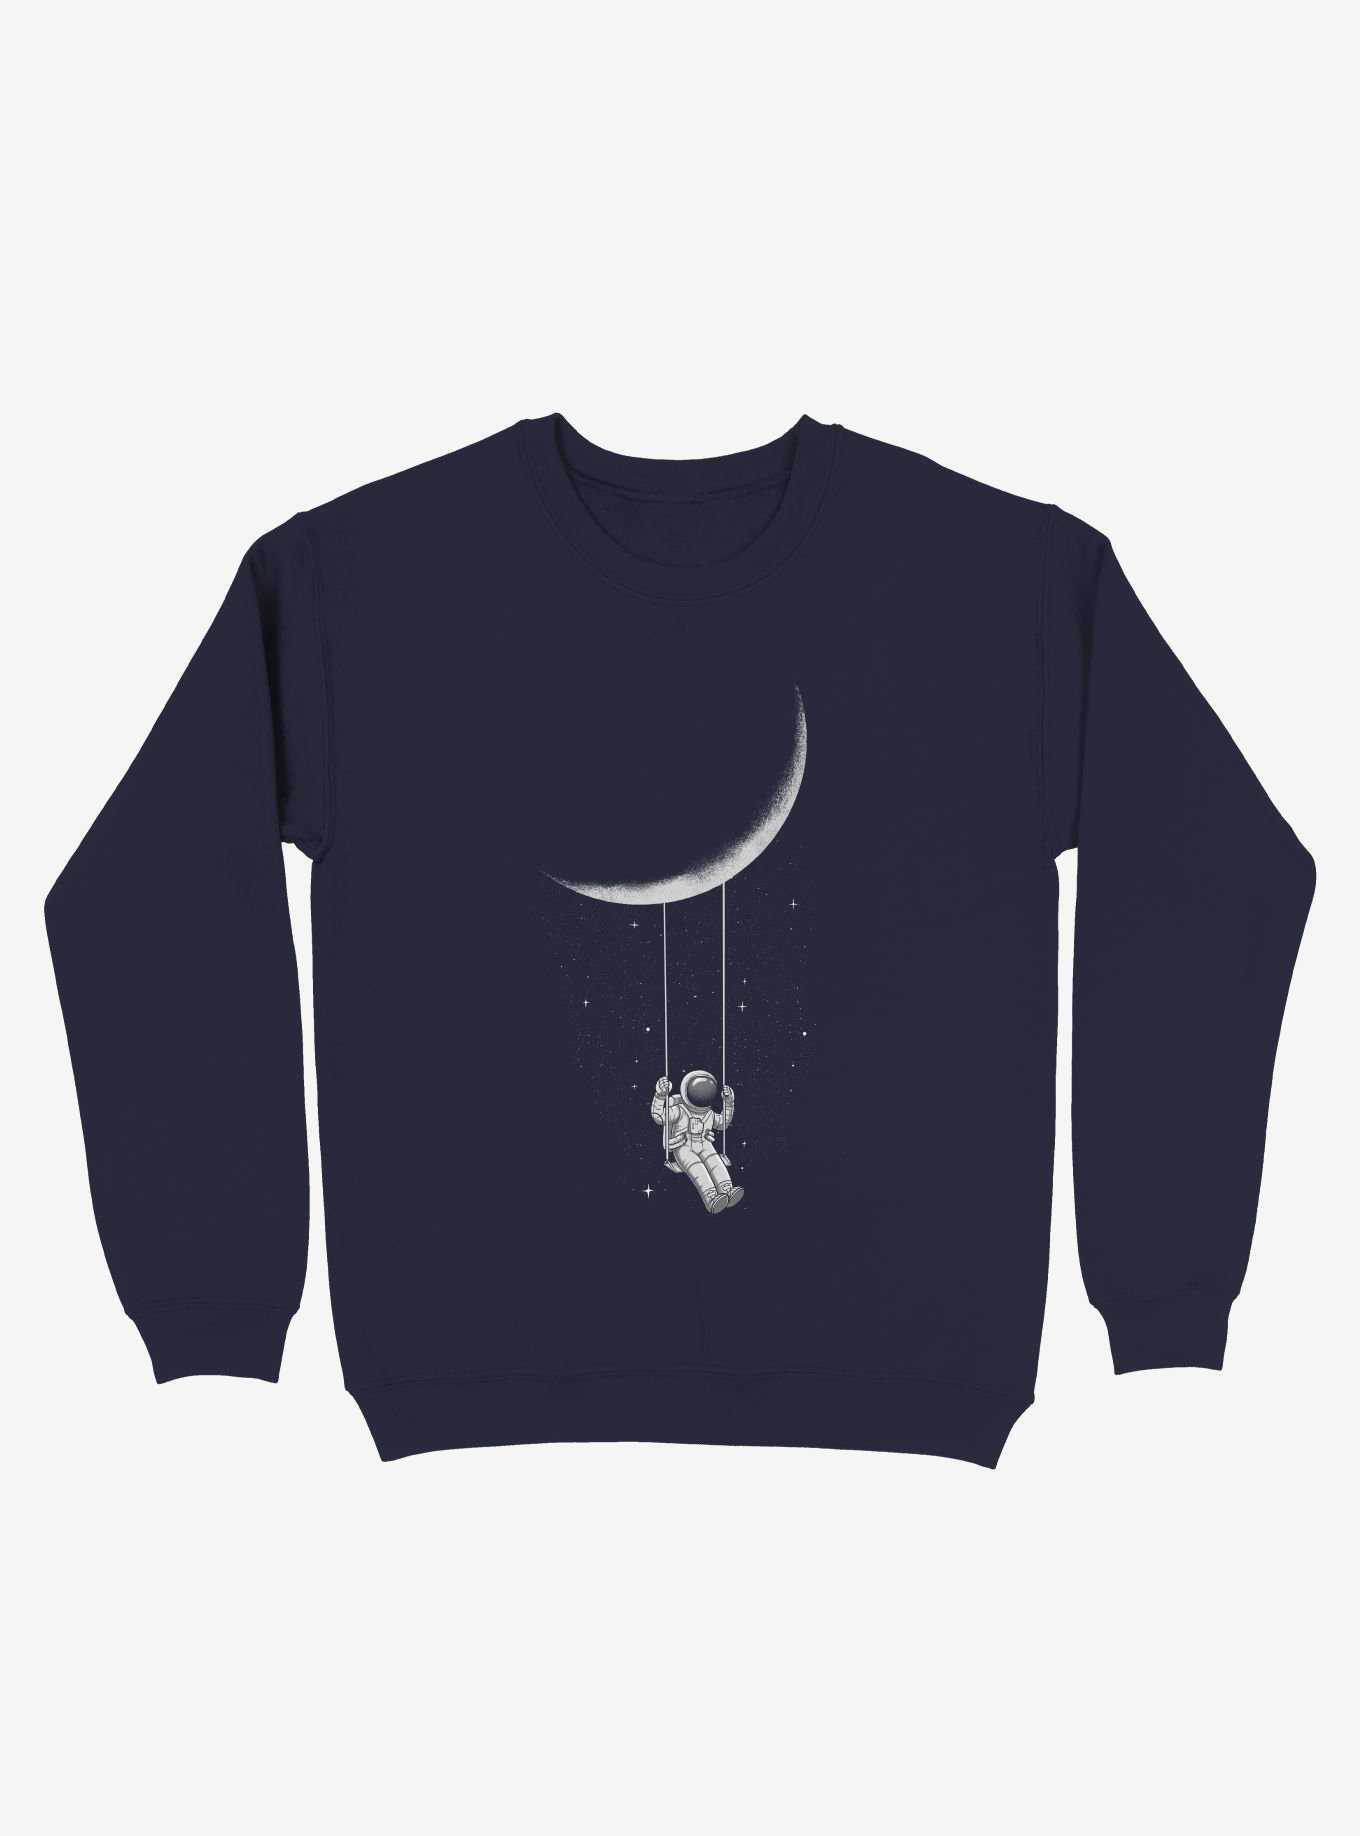 Astronaut Moon Swing Navy Blue Sweatshirt, , hi-res